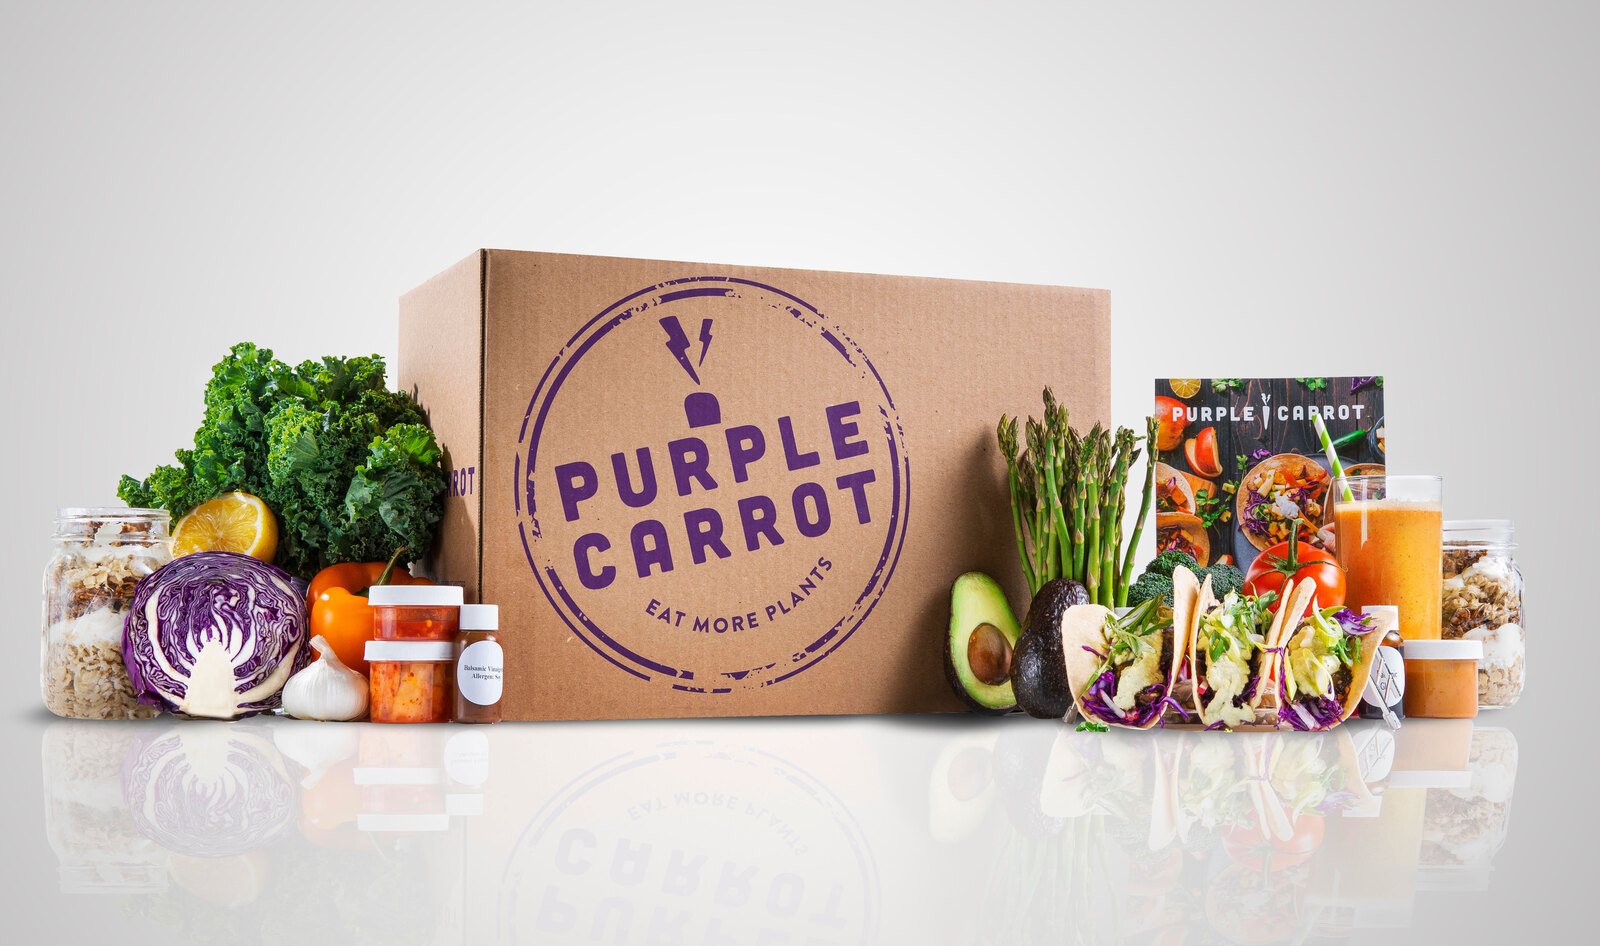 Vegan Meal Kit Brand Purple Carrot Donates $40,000 to Black Lives Matter